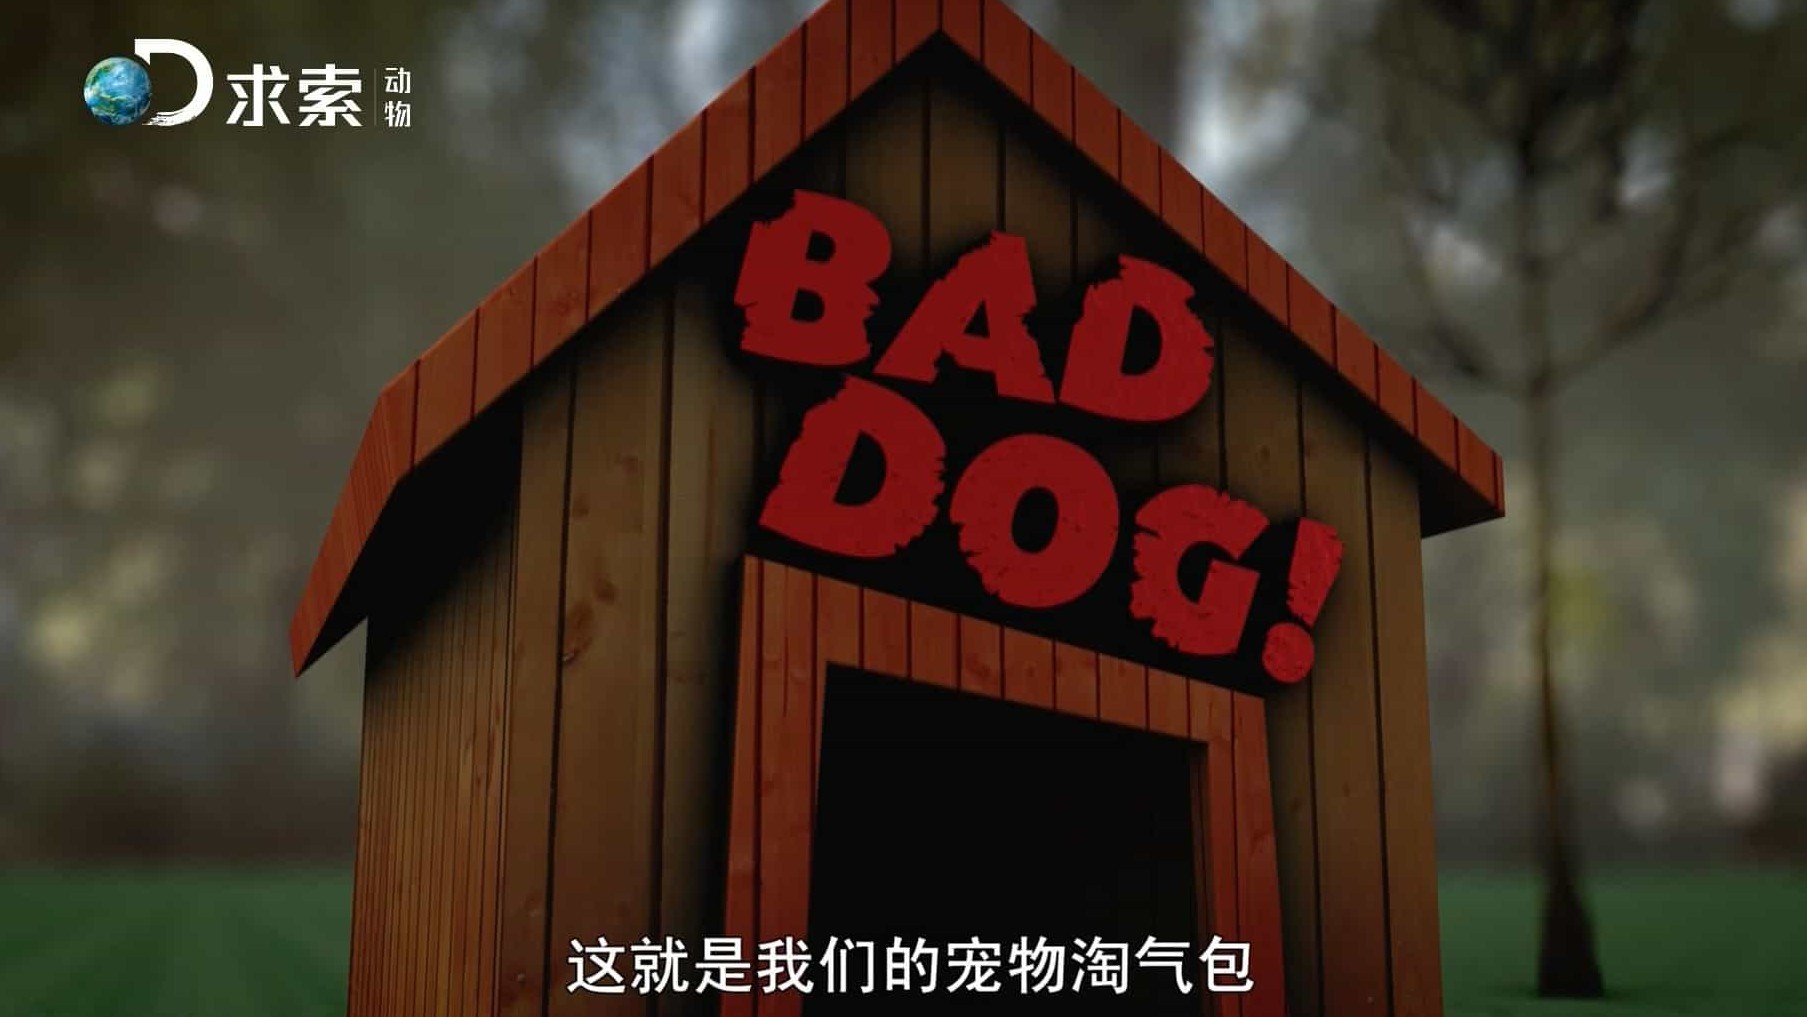 探索频道萌宠纪录片/萌宠系列《宠物淘气包/家有恶犬 Bad Dog! 》全5集 国语中字 1080i高清下载